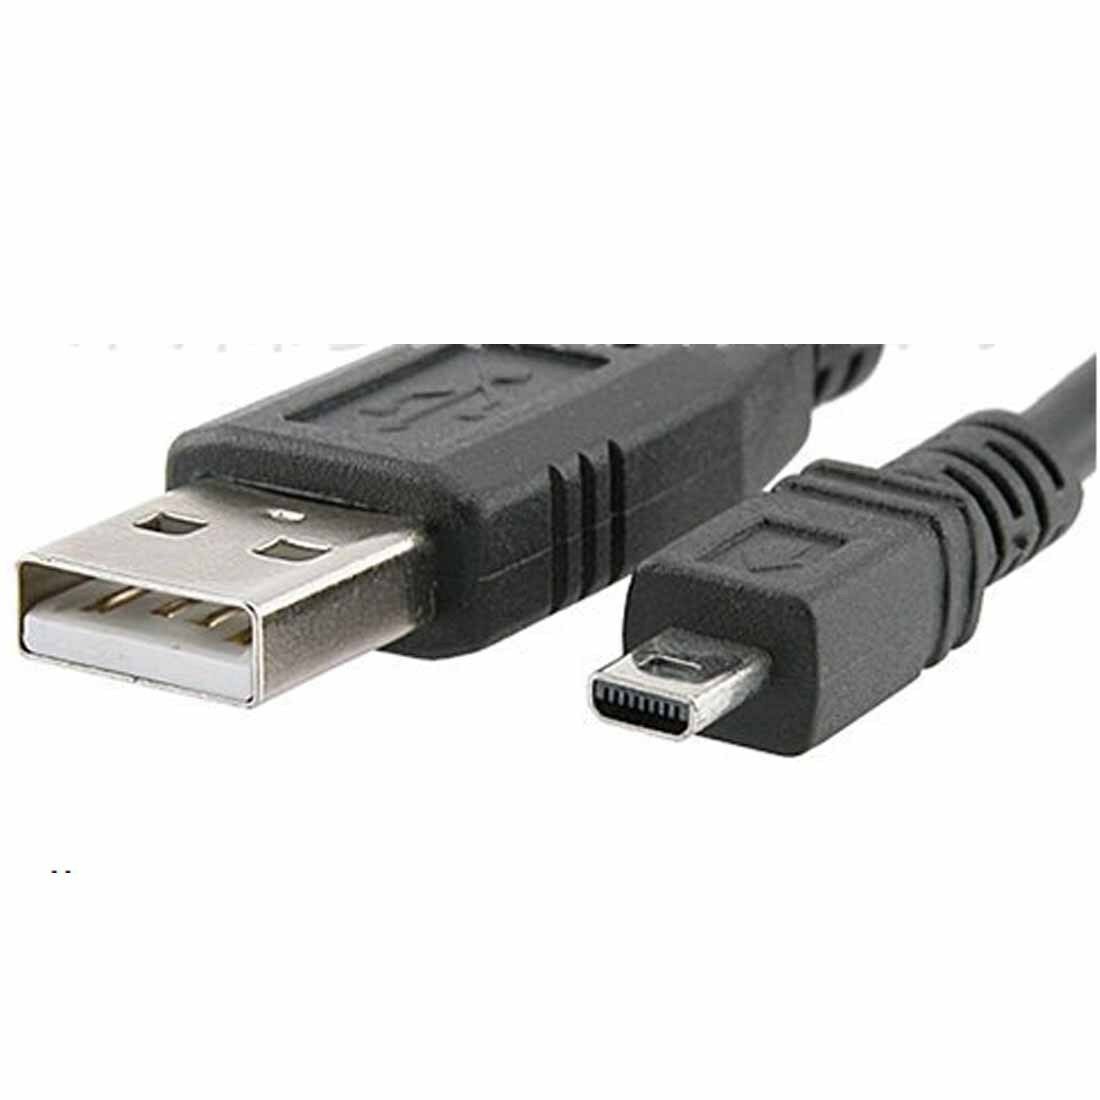 USB CABLE FOR KODAK V705 V803  Z1012 IS Z1085 IS Z1275 Z1285 Z1485 IS Z612 Z650